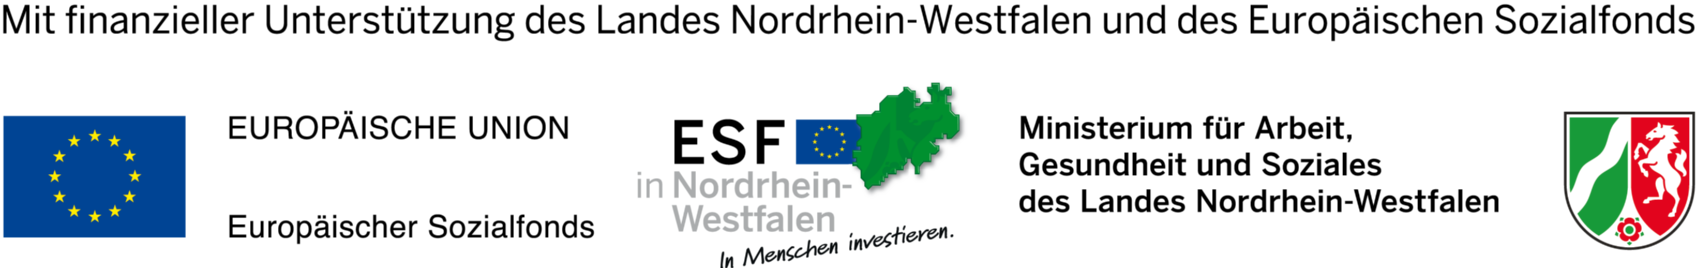 Mit finanzieller Unterstützung des Landes Nordrhein-Westfalen und des Europäischen Sozialfonds